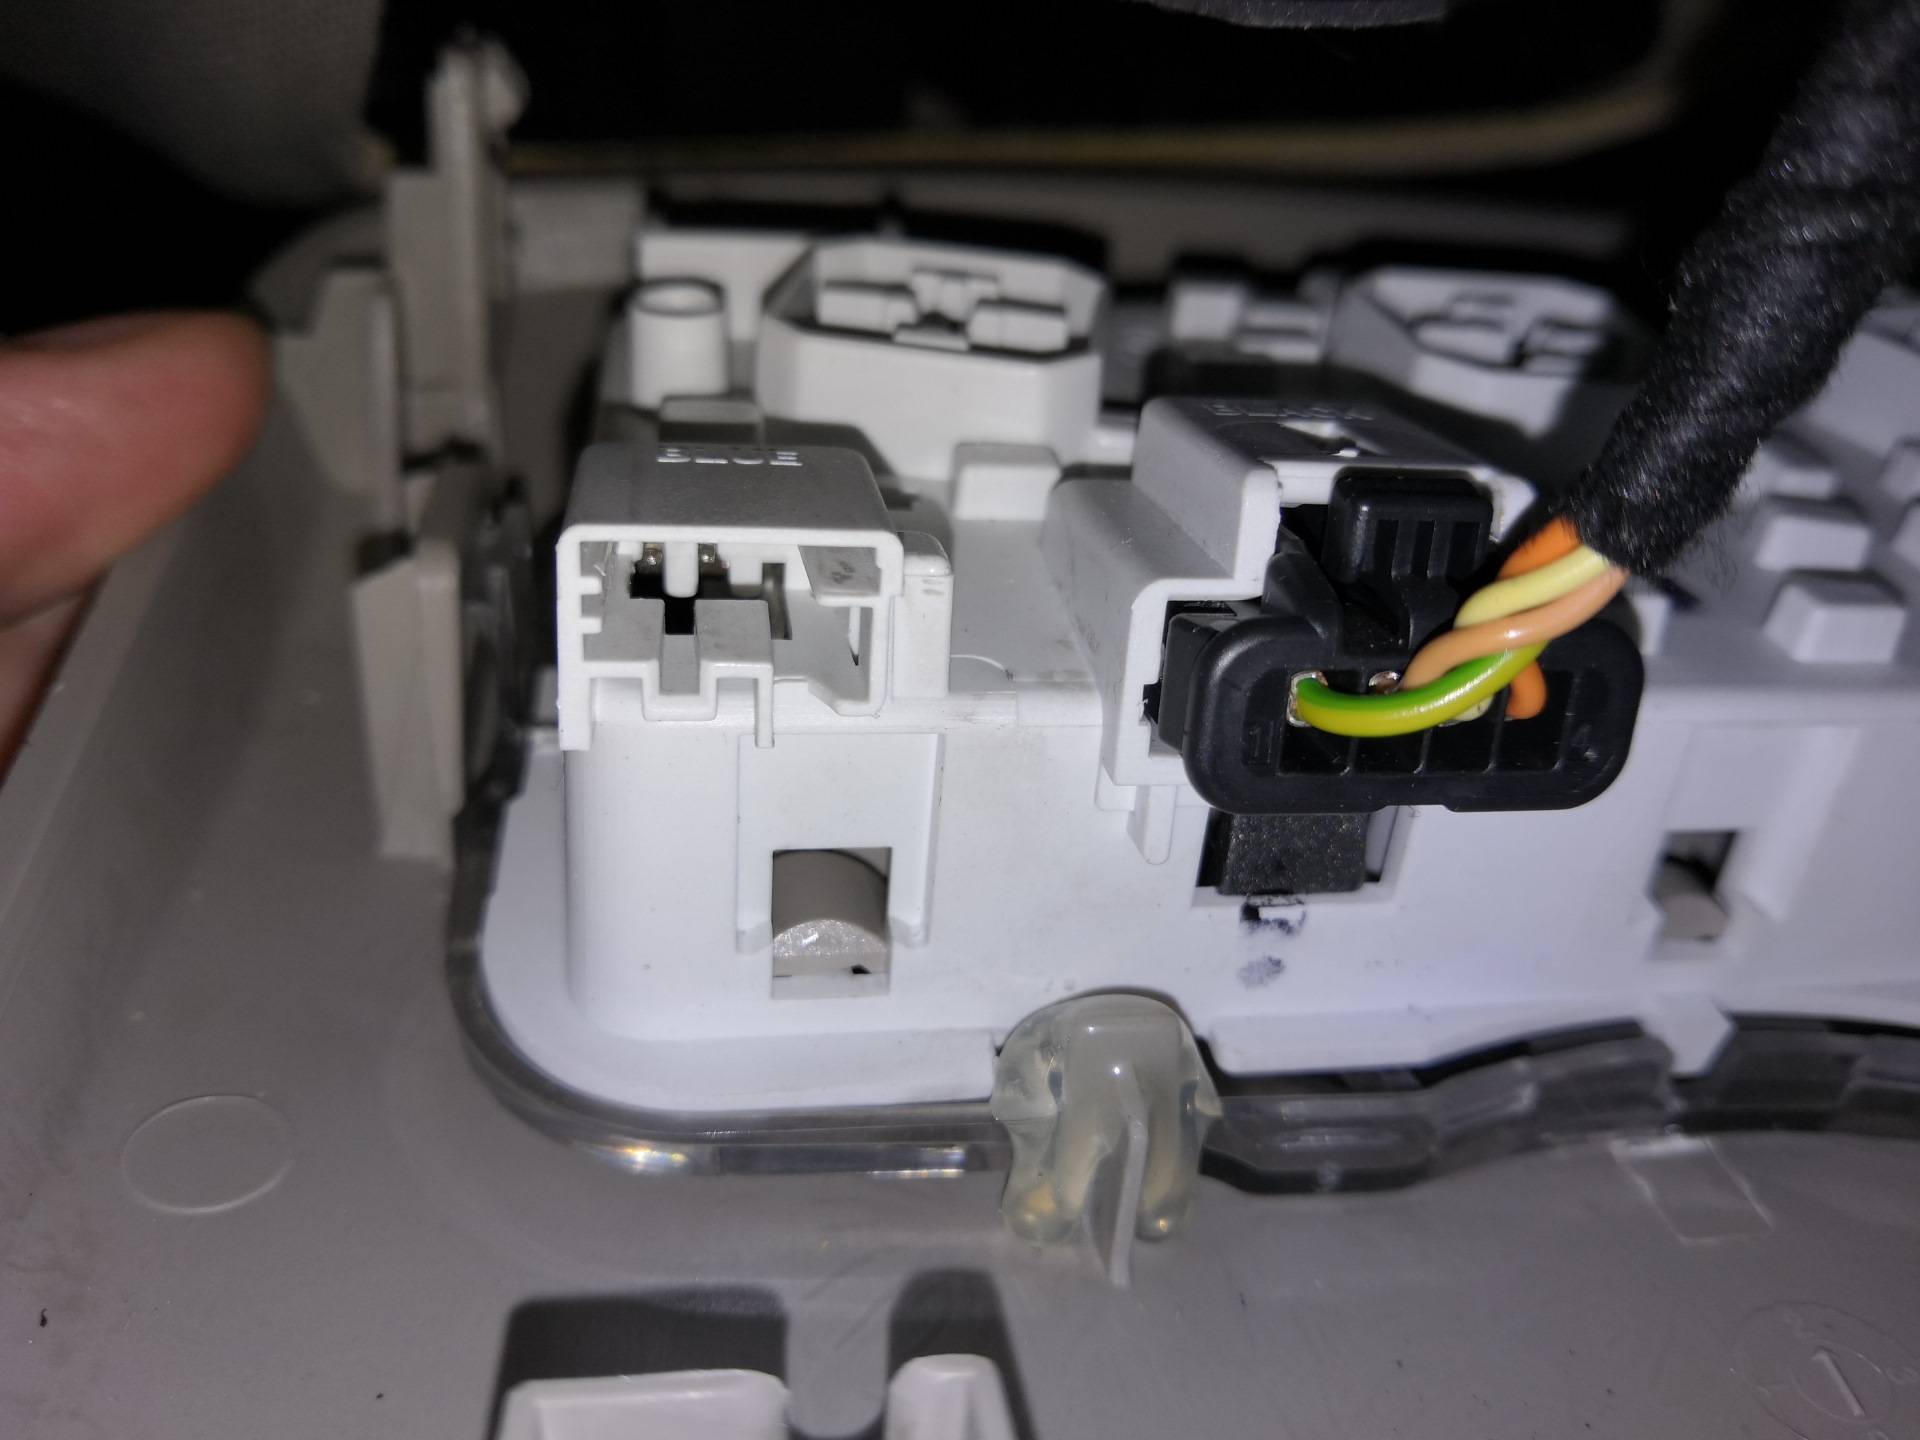 Как подключить видеорегистратор в машине без использования прикуривателя и проводов